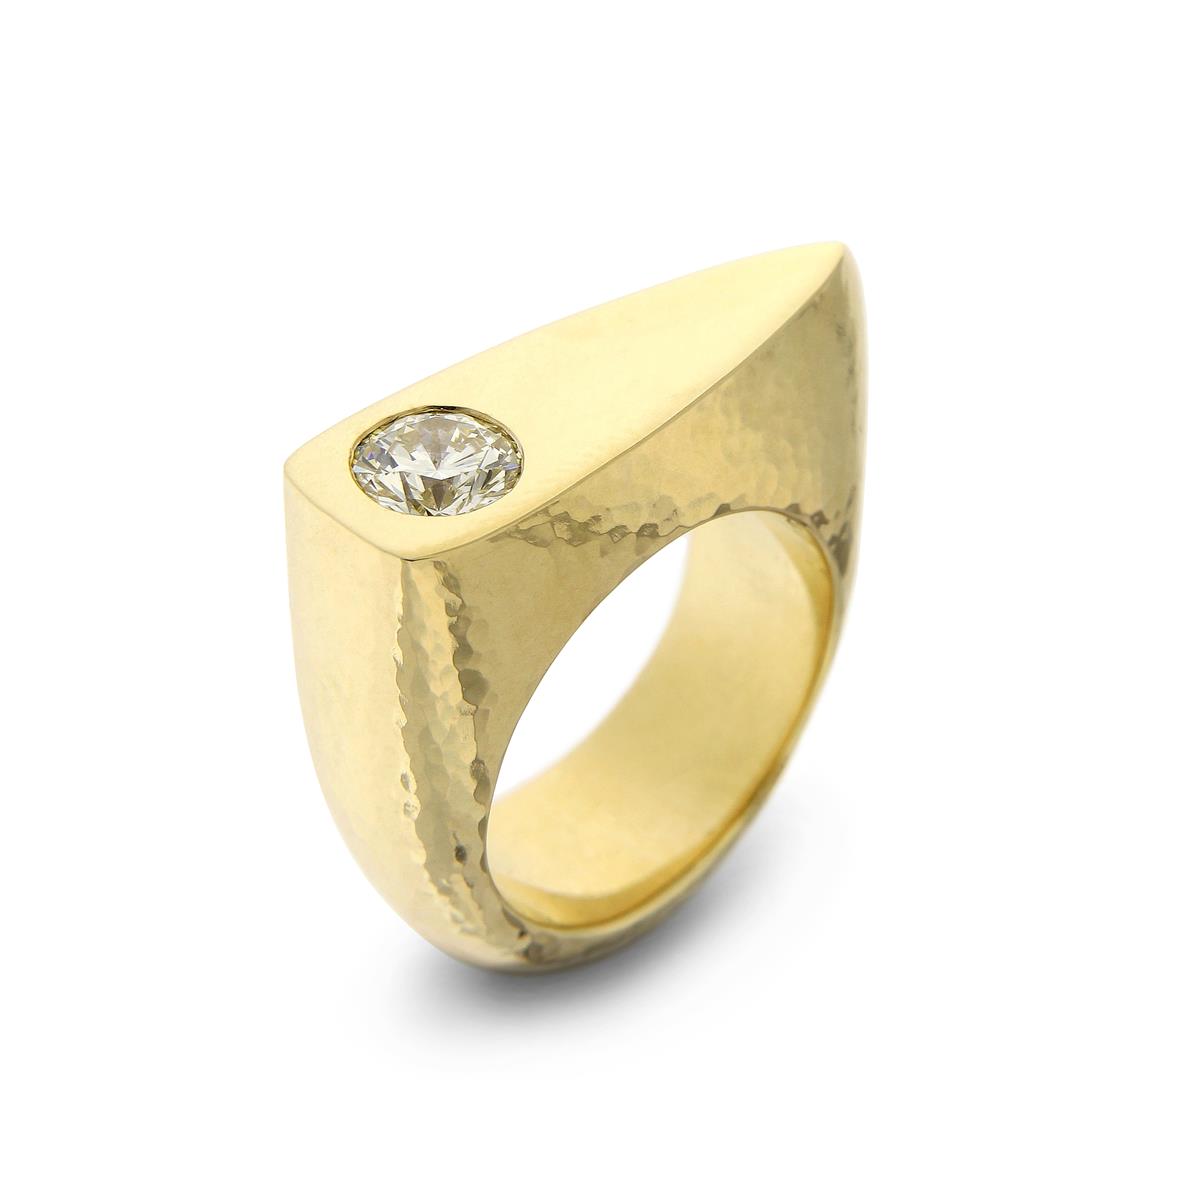 Katie g. Jewellery - Massiver Gelbgold Ring mit Brillant 2